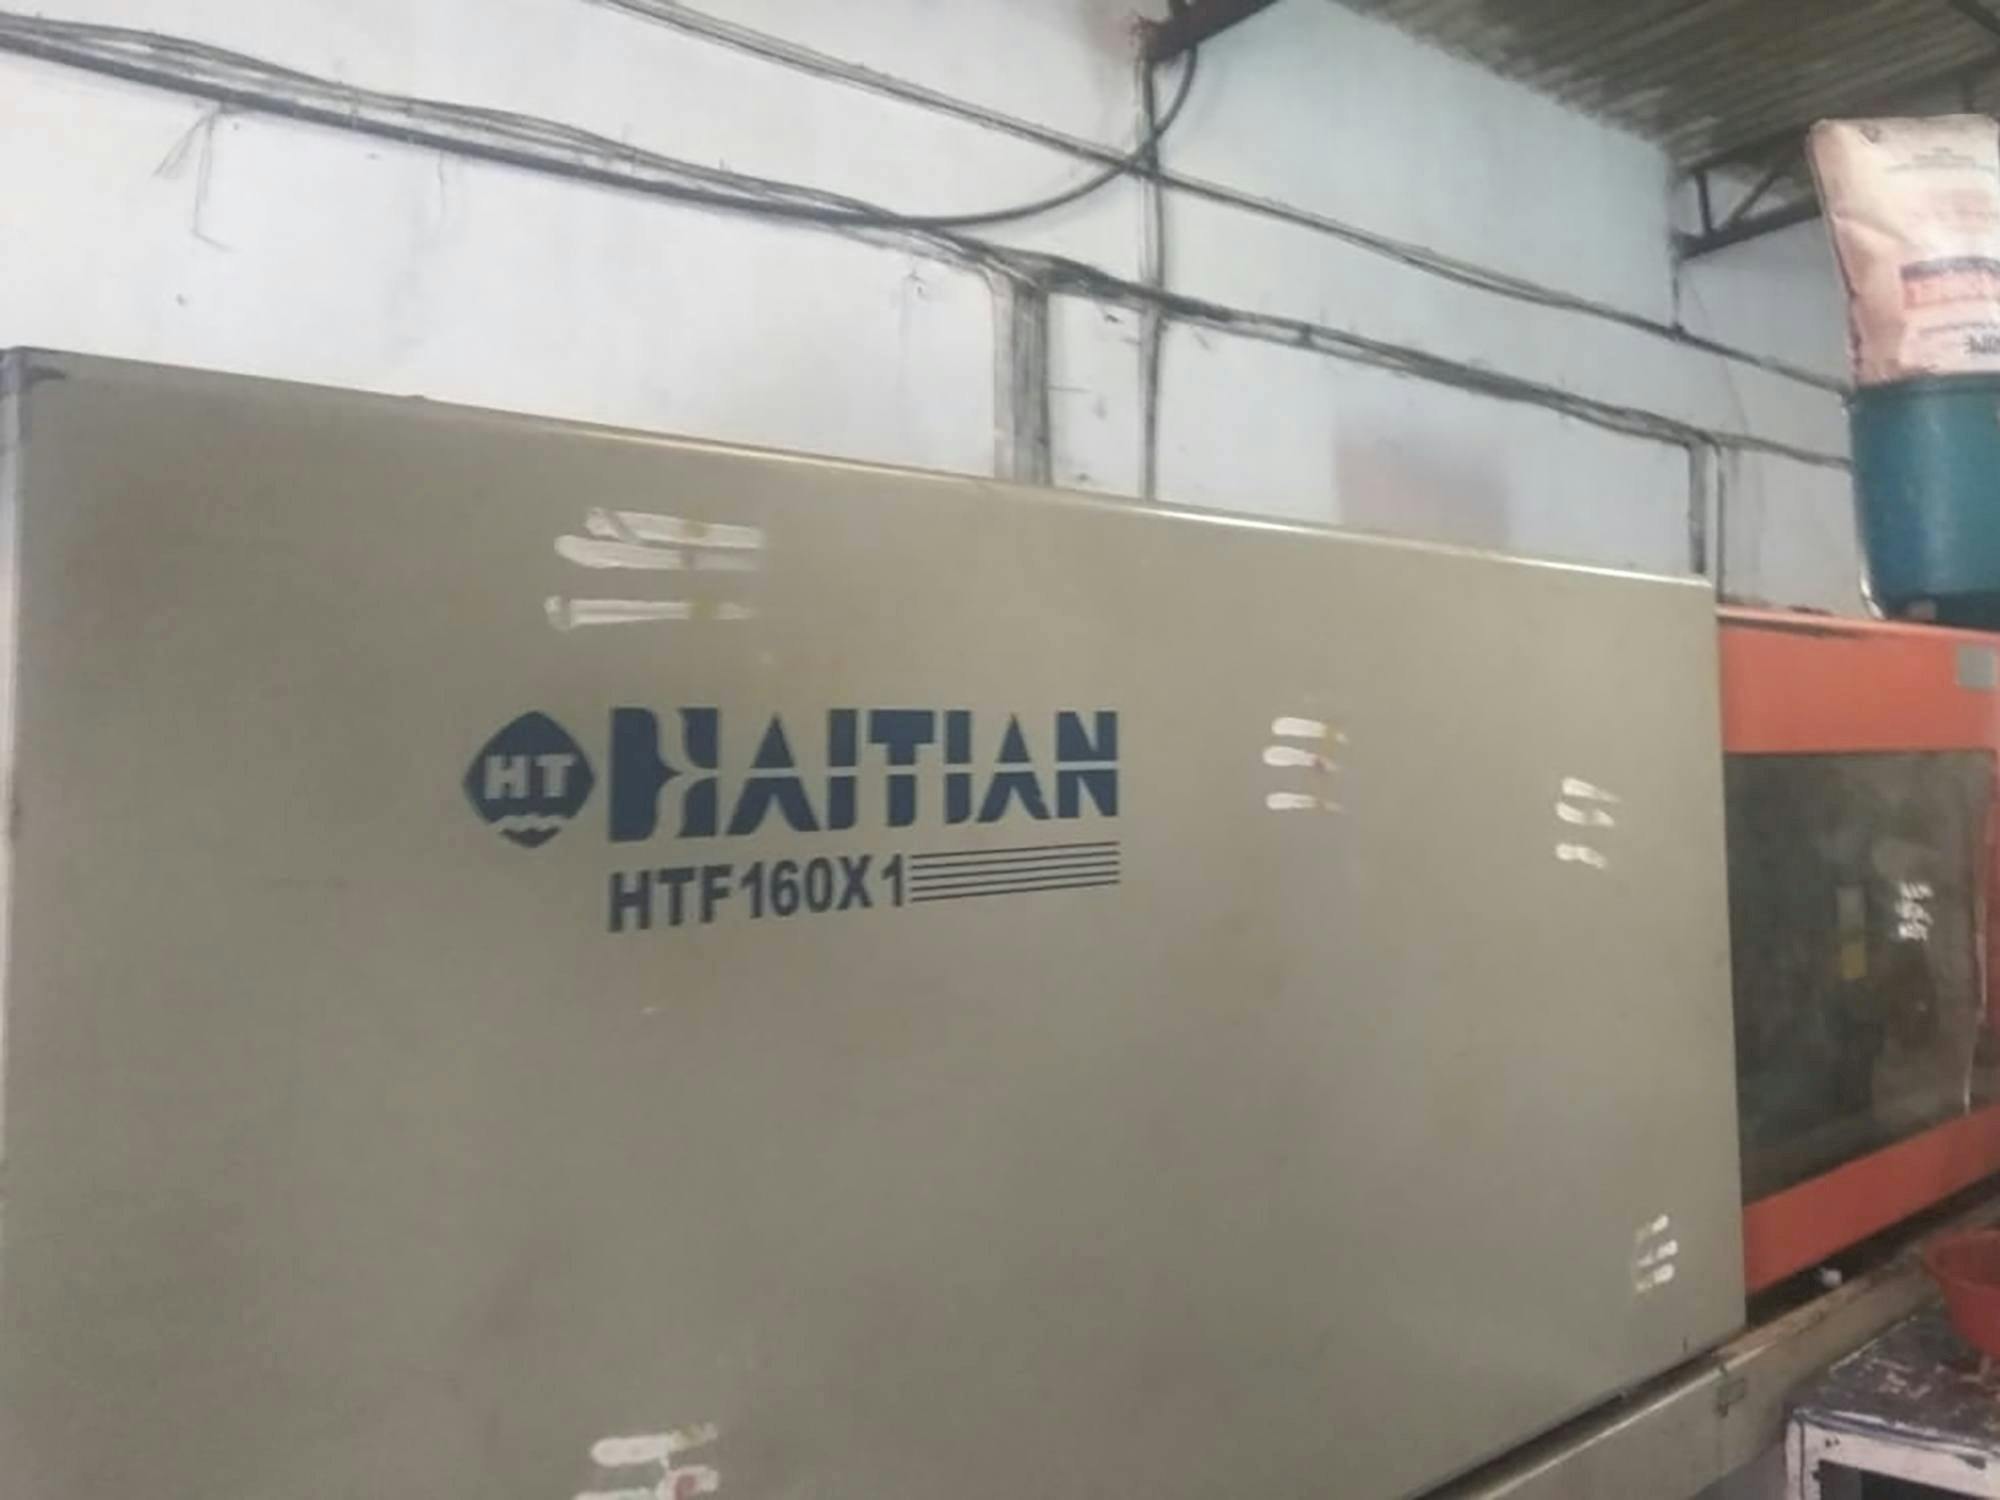 Vooraanzicht  van HAITIAN HTF160X1 machine